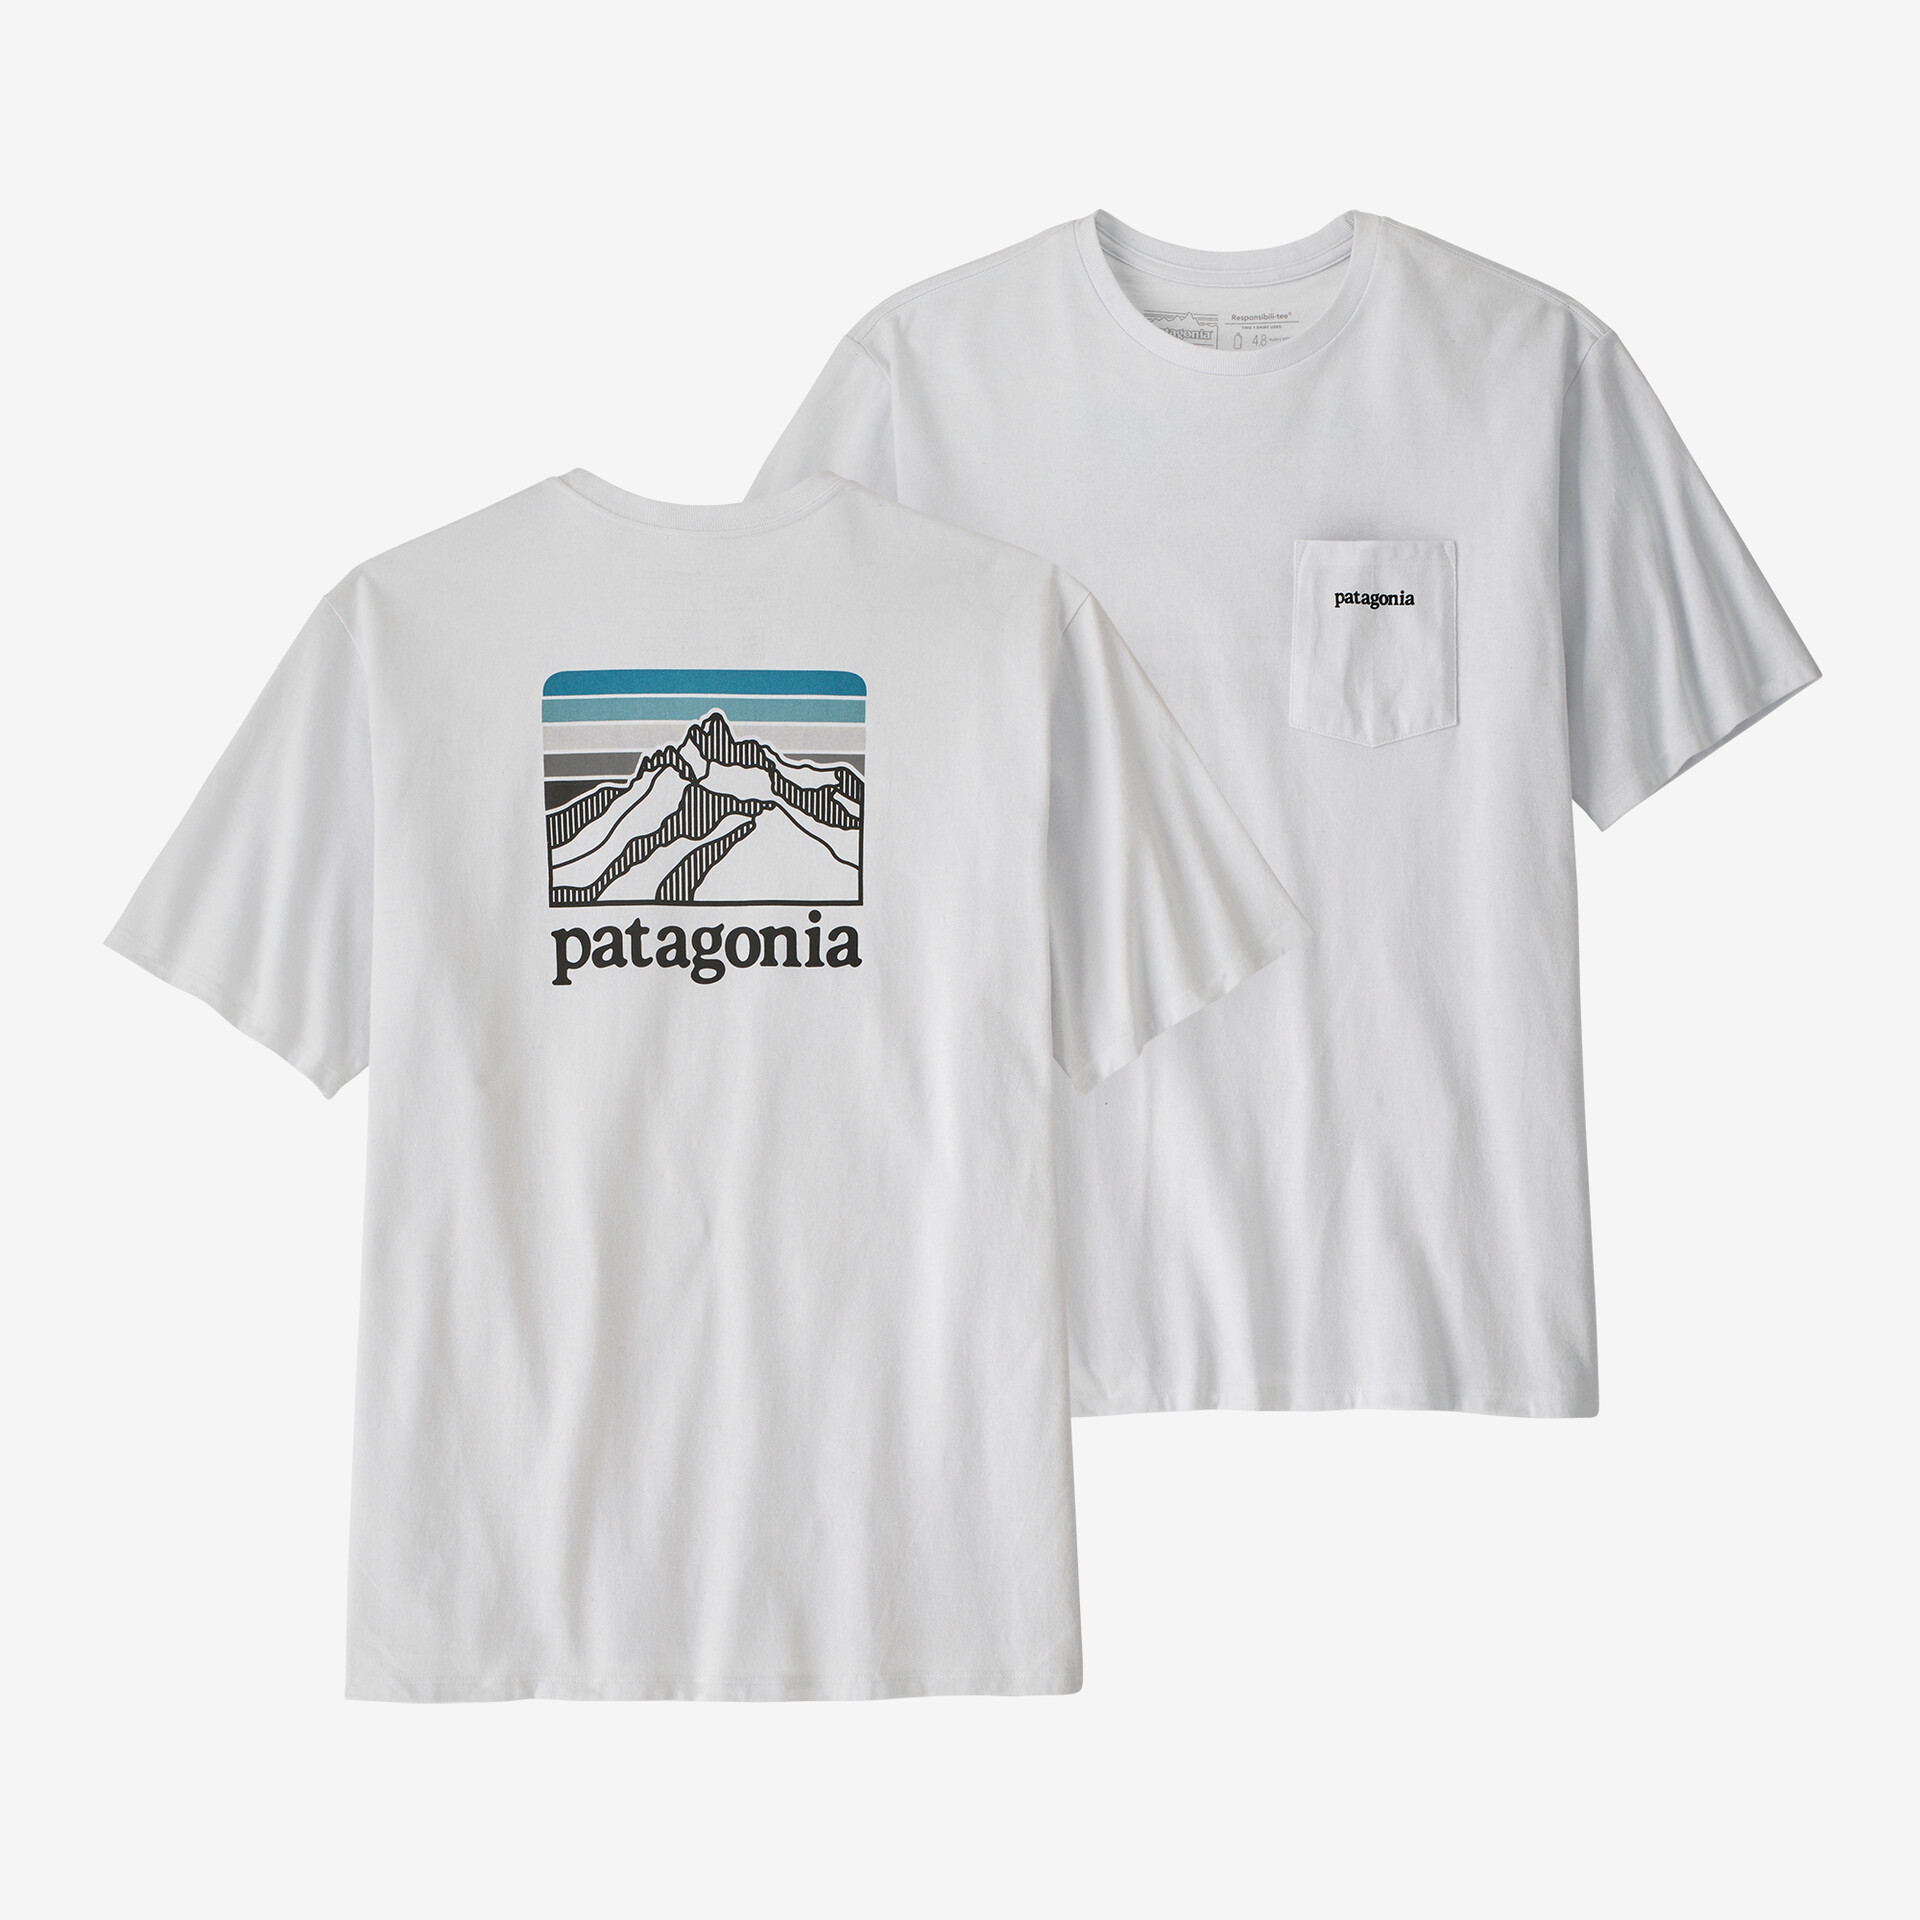 Мужская ответственная футболка с логотипом и карманом Patagonia, белый мужская ответственная футболка с логотипом и карманом patagonia черный